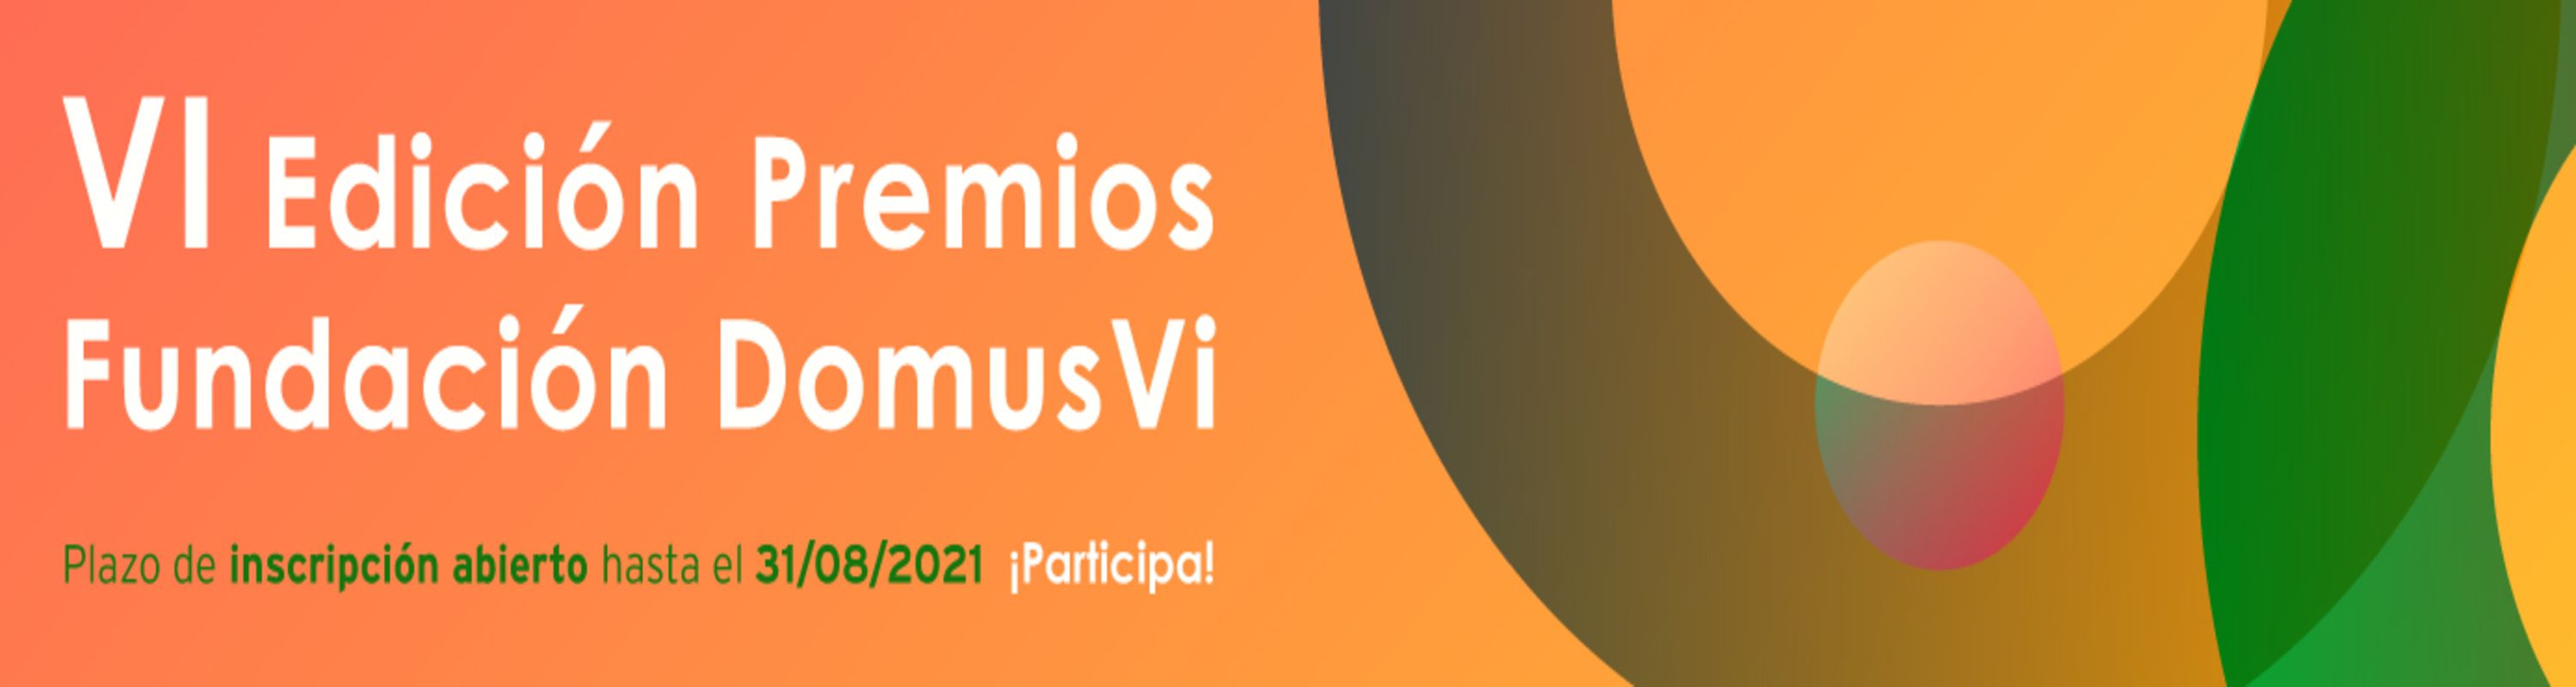 Banner web VI Edicion Premios Fundacion (4)